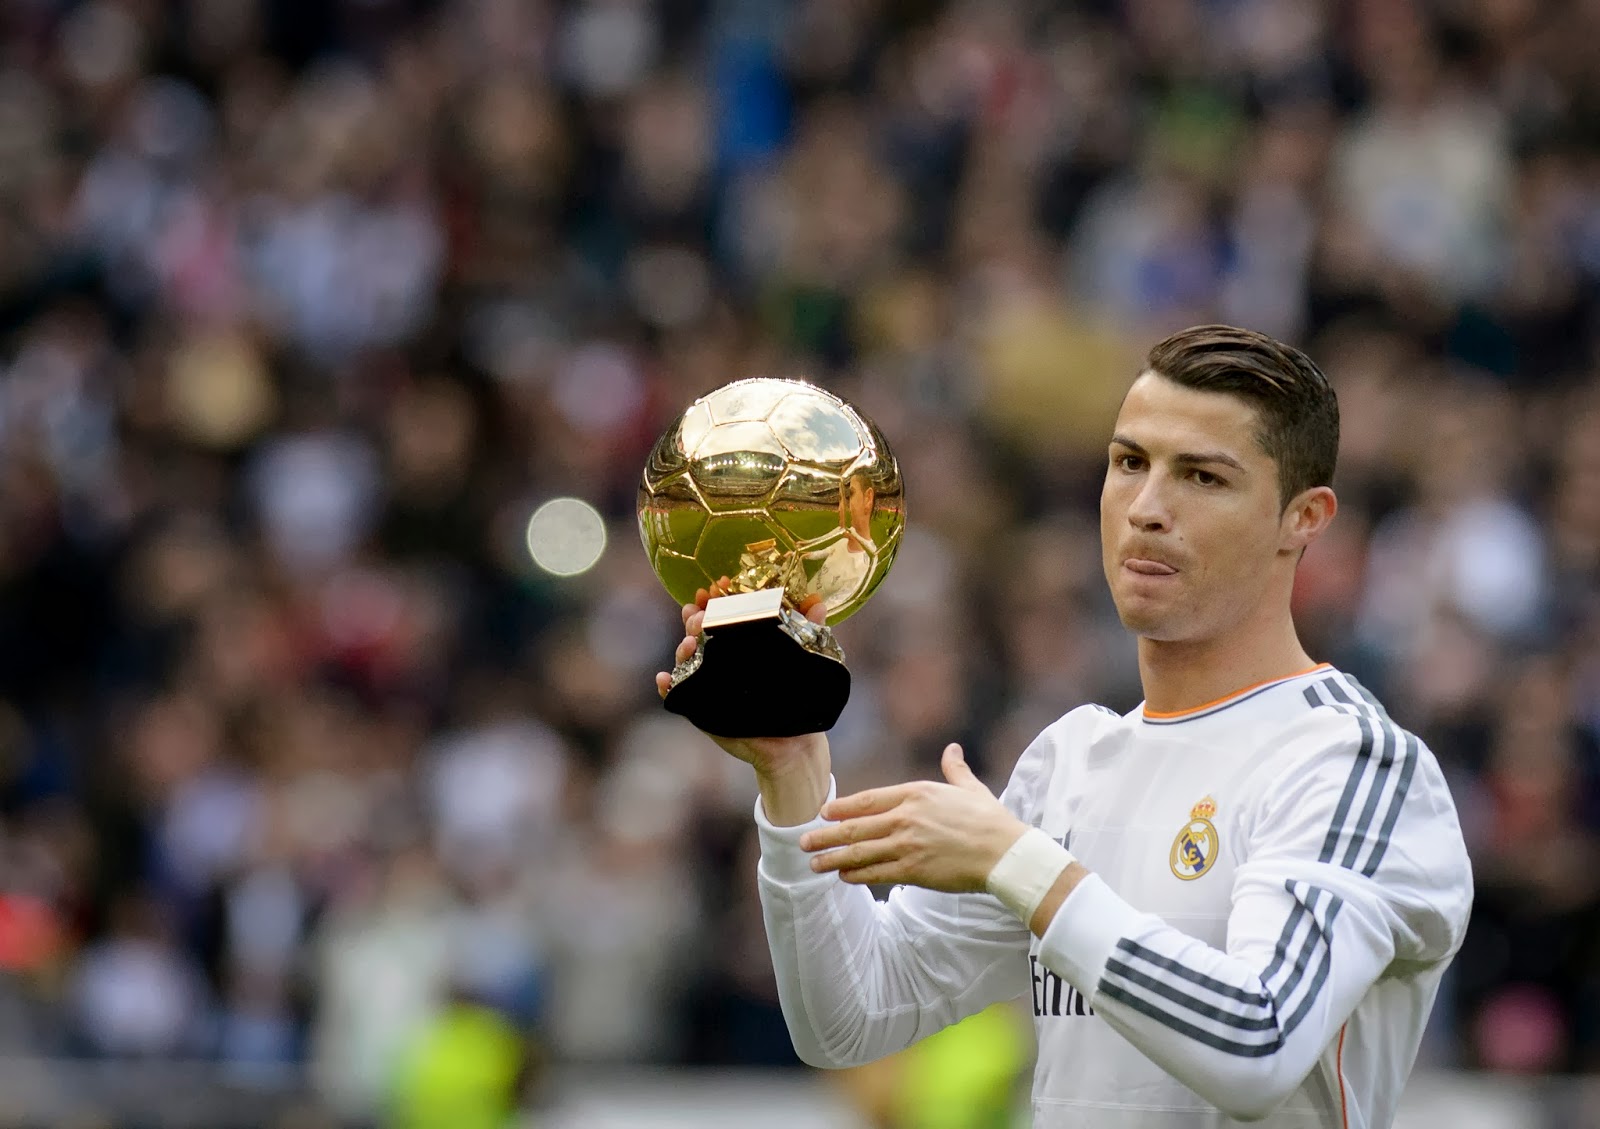 Cristiano Ronaldo with his the Ballon d' (Golden Ball) Award - Images